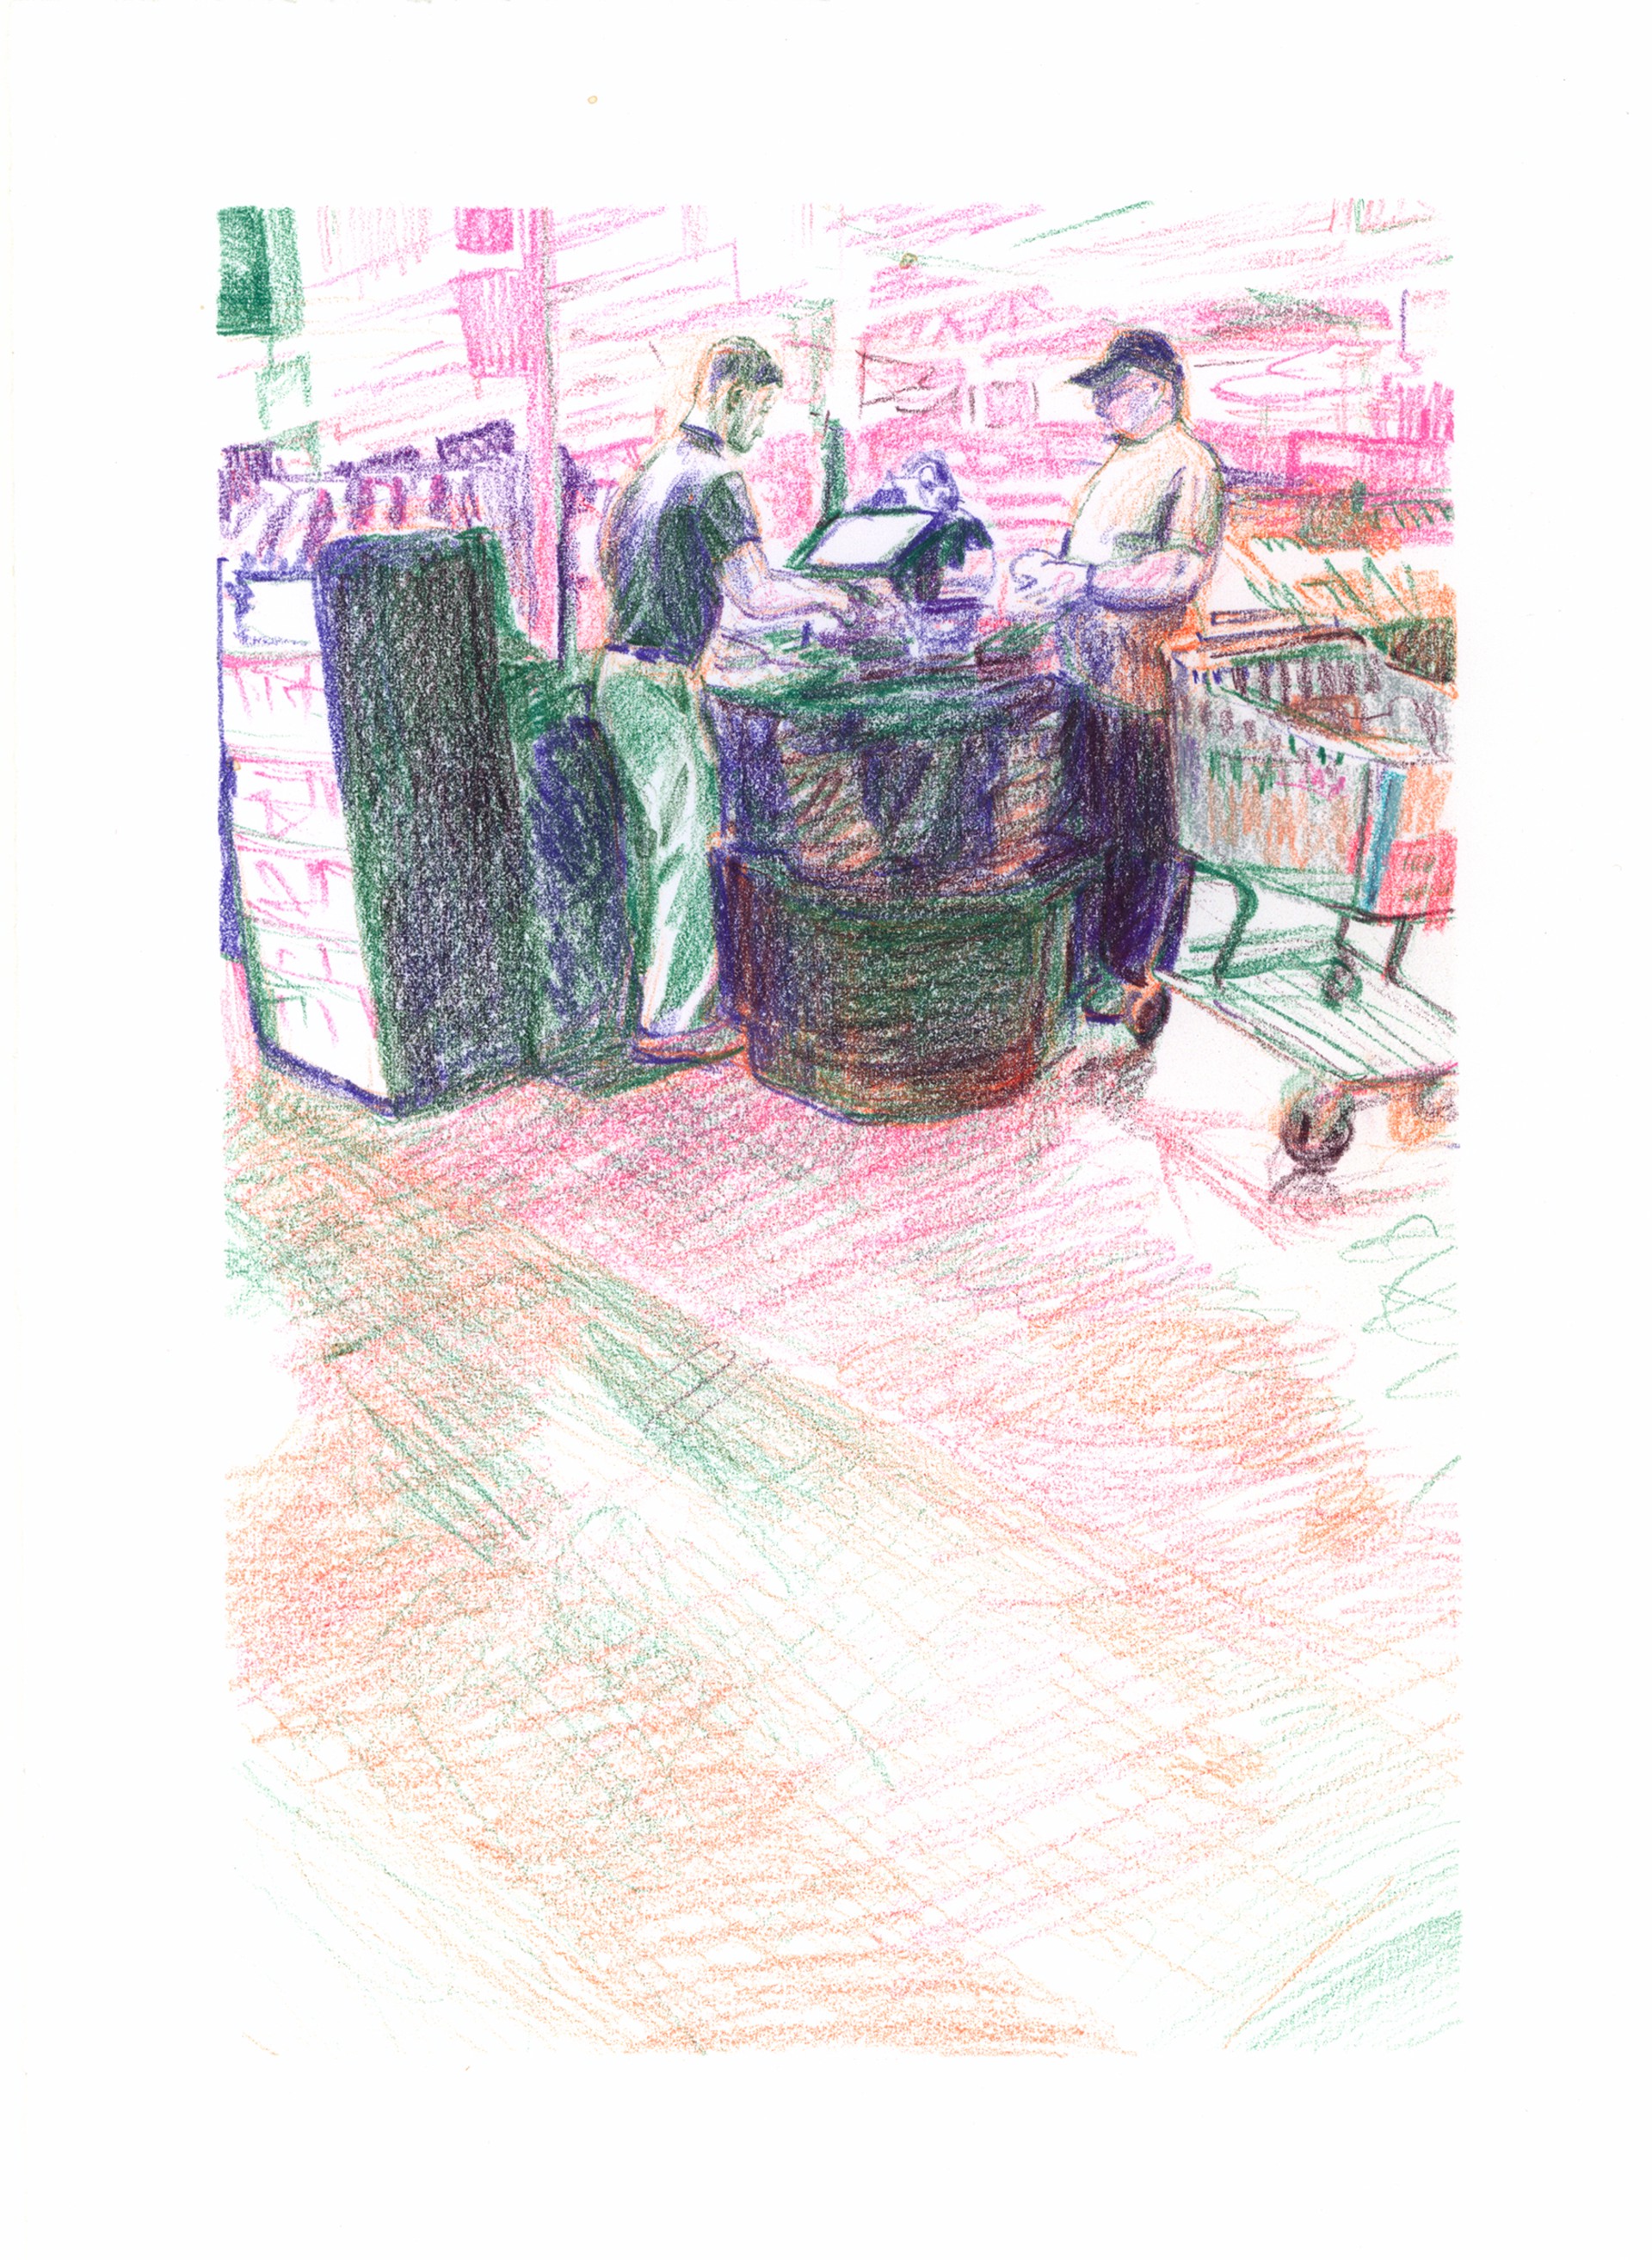 Marketplace/Cashier #48 by Eilis Crean